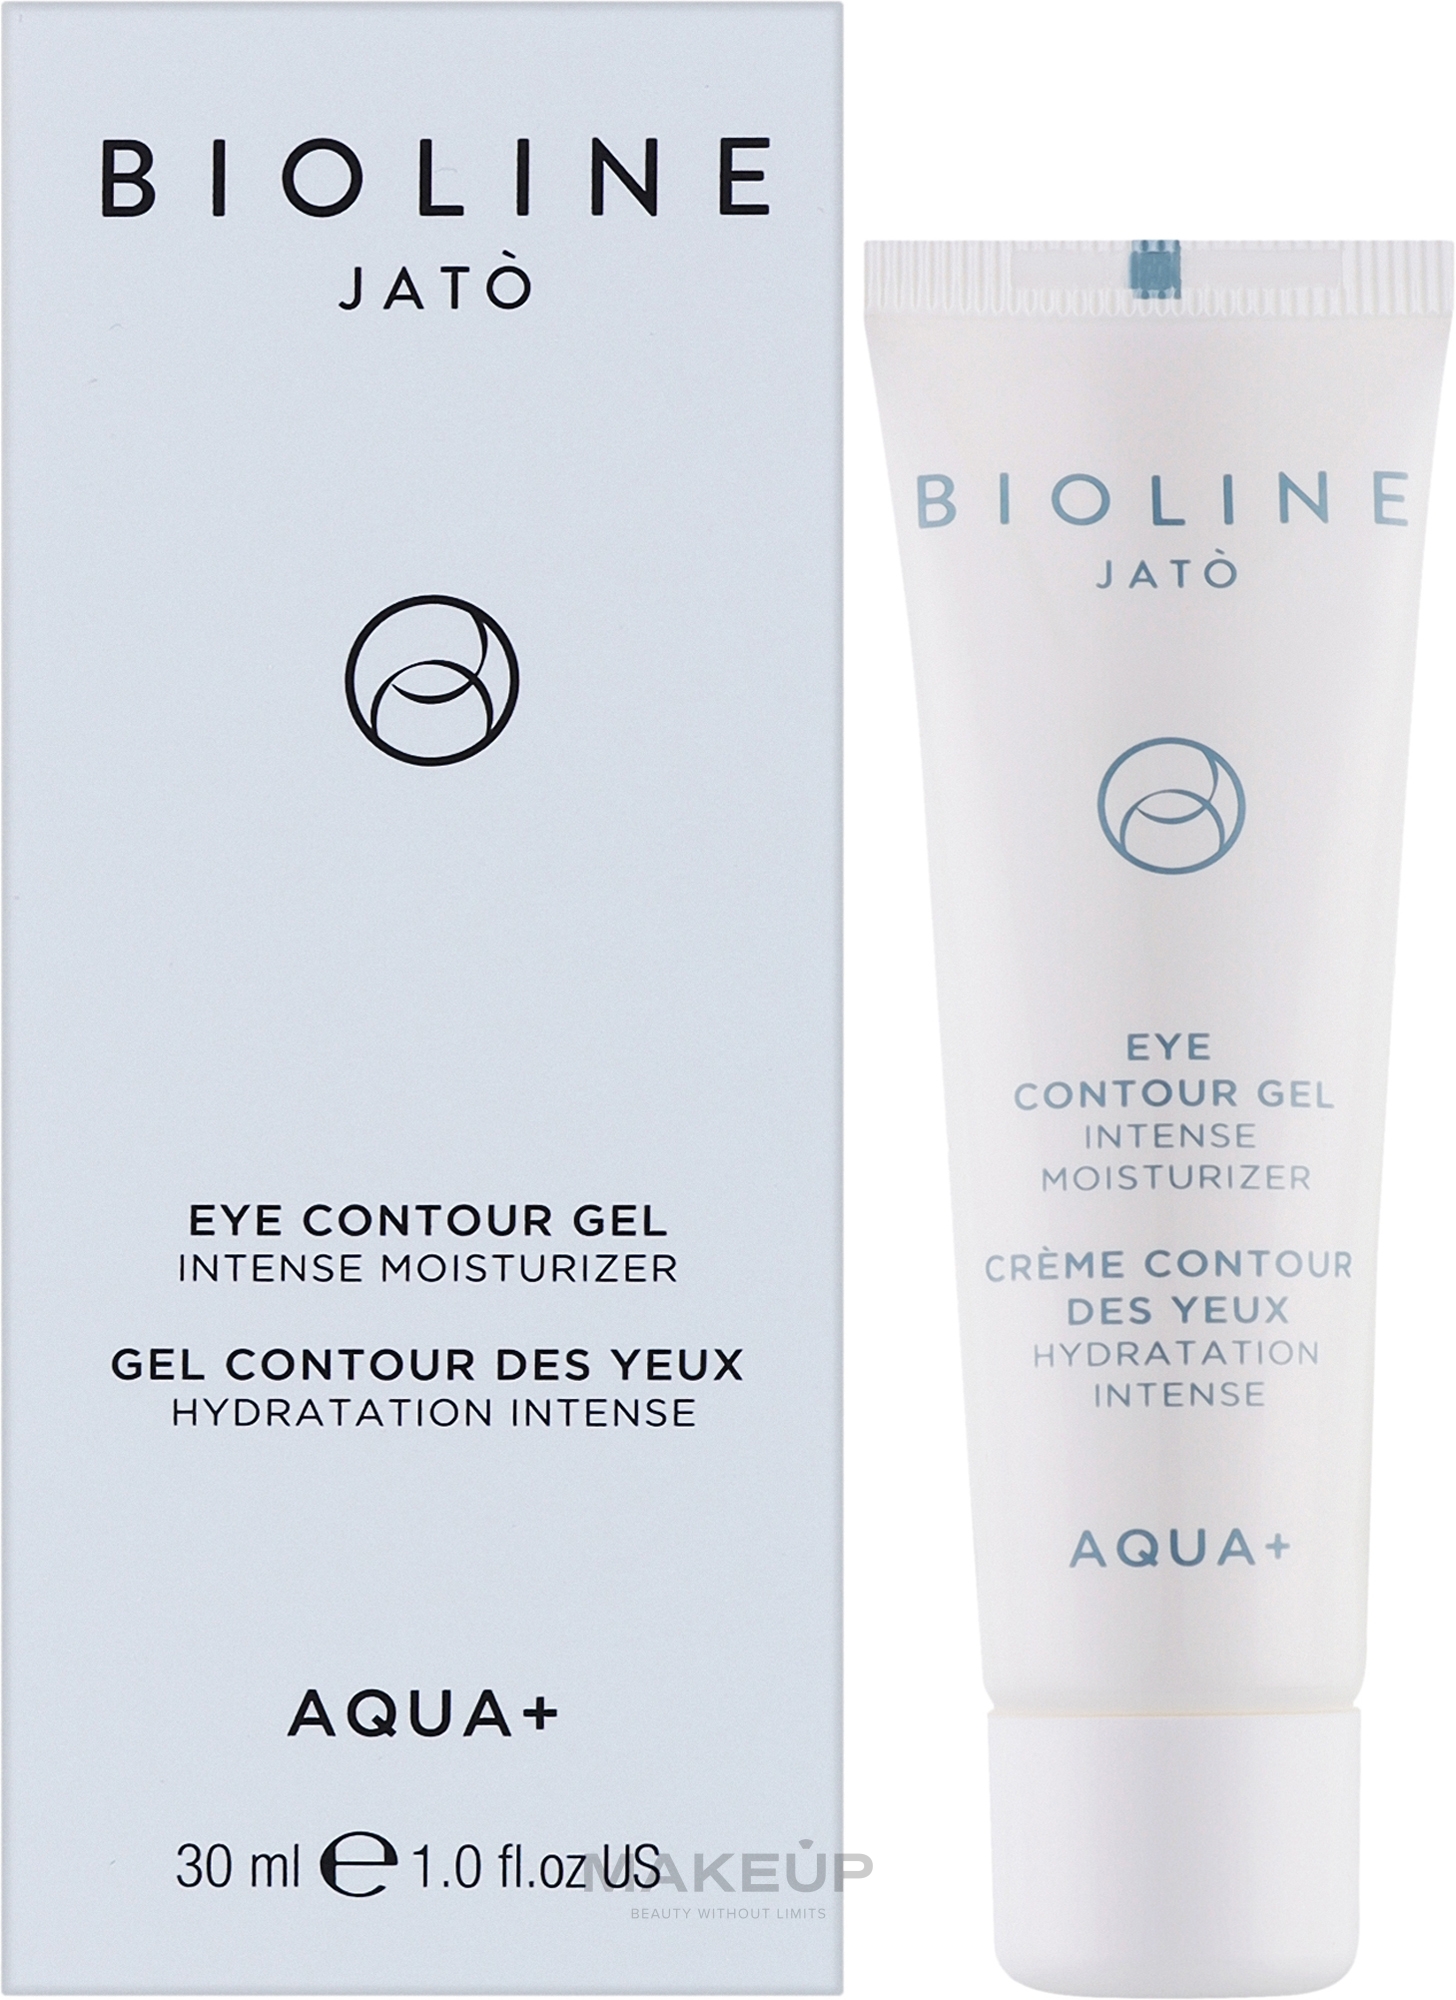 Гель для контура глаз, увлажняющий - Bioline Jato Aqua+ Eye Contour Gel Intense Moisturizer — фото 30ml